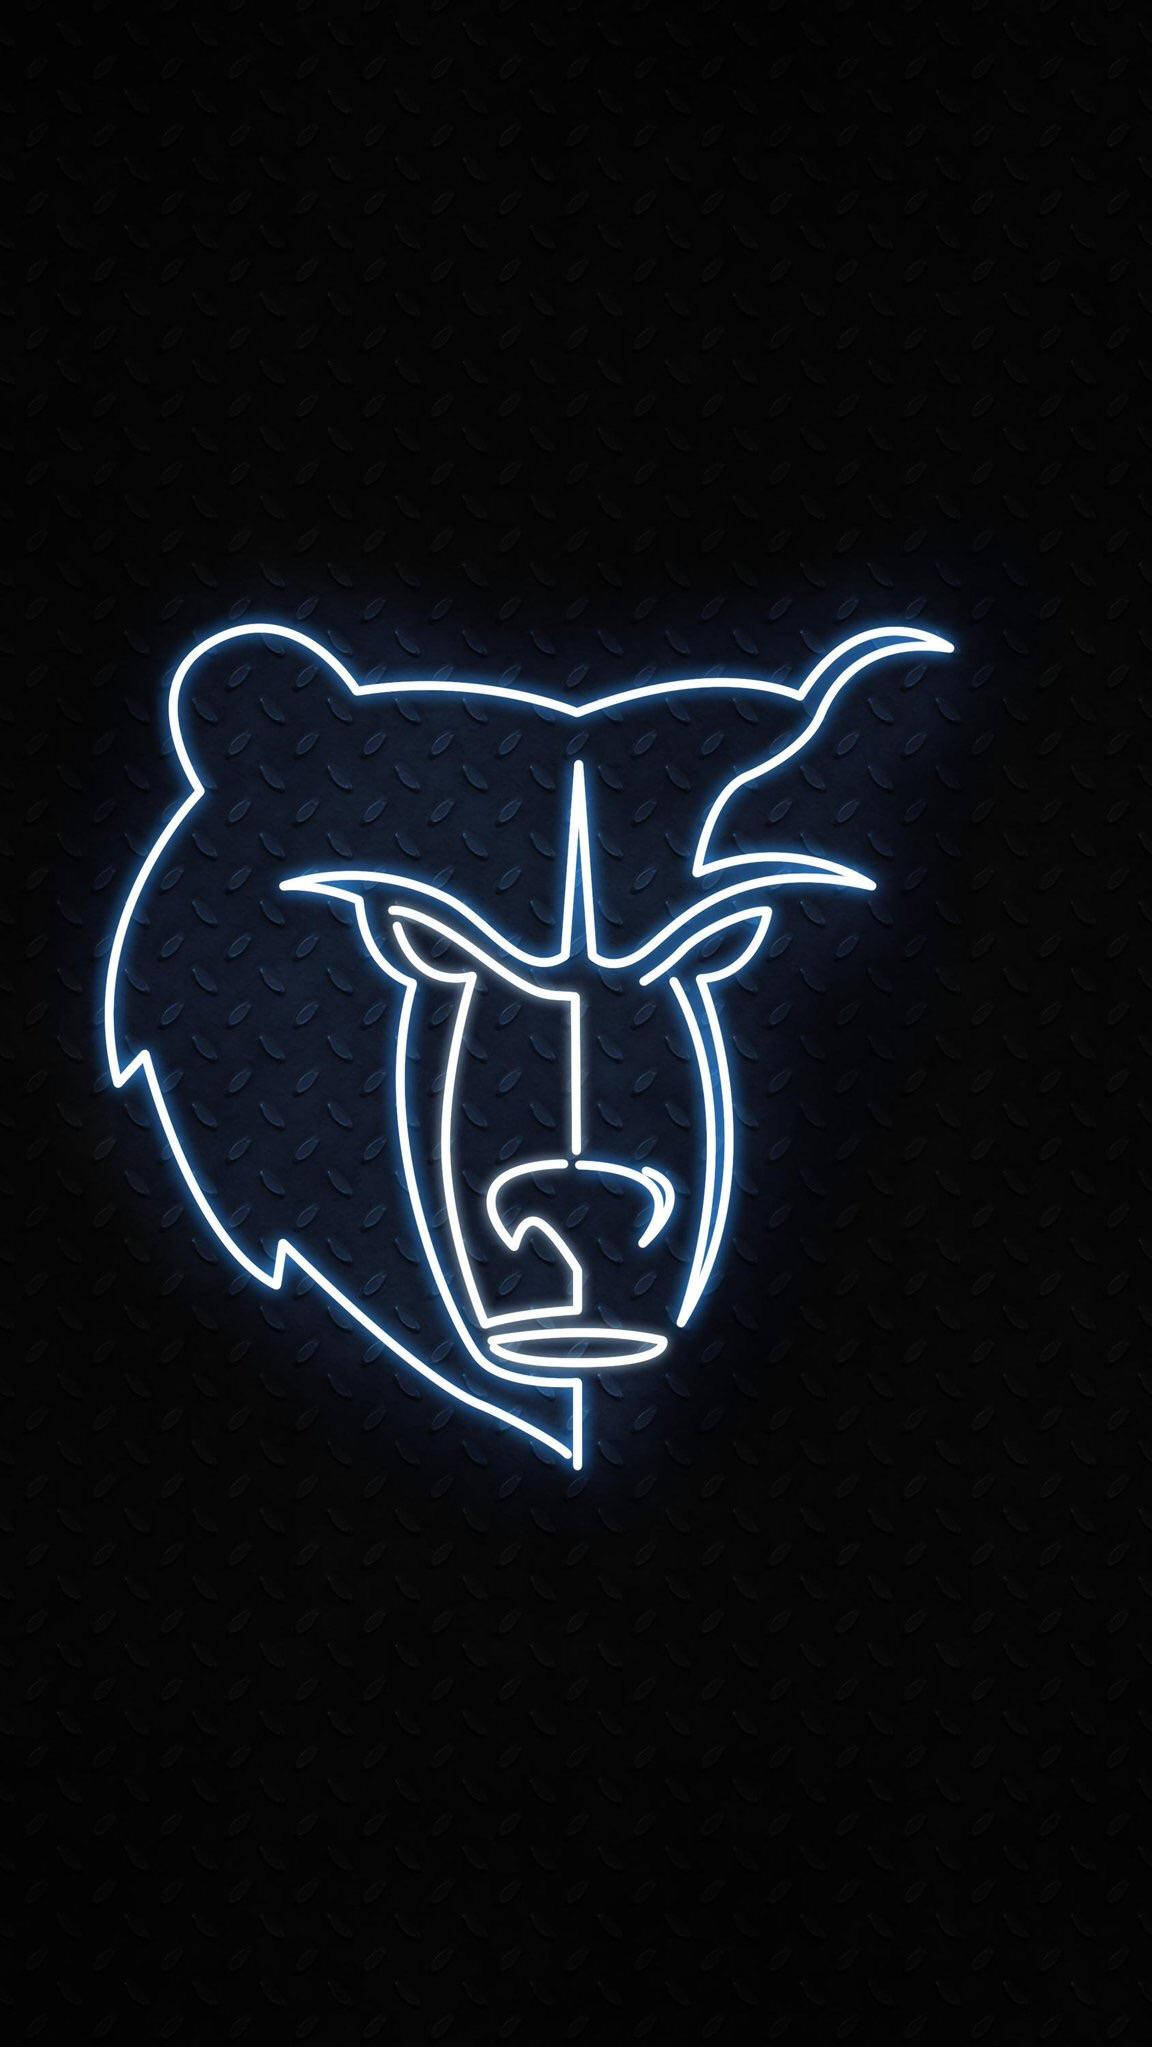 Logoda Nba Memphis Grizzlies Com Um Urso Pardo Mostrando Metade De Seu Rosto Em Um Papel De Parede Para Computador Ou Celular. Papel de Parede